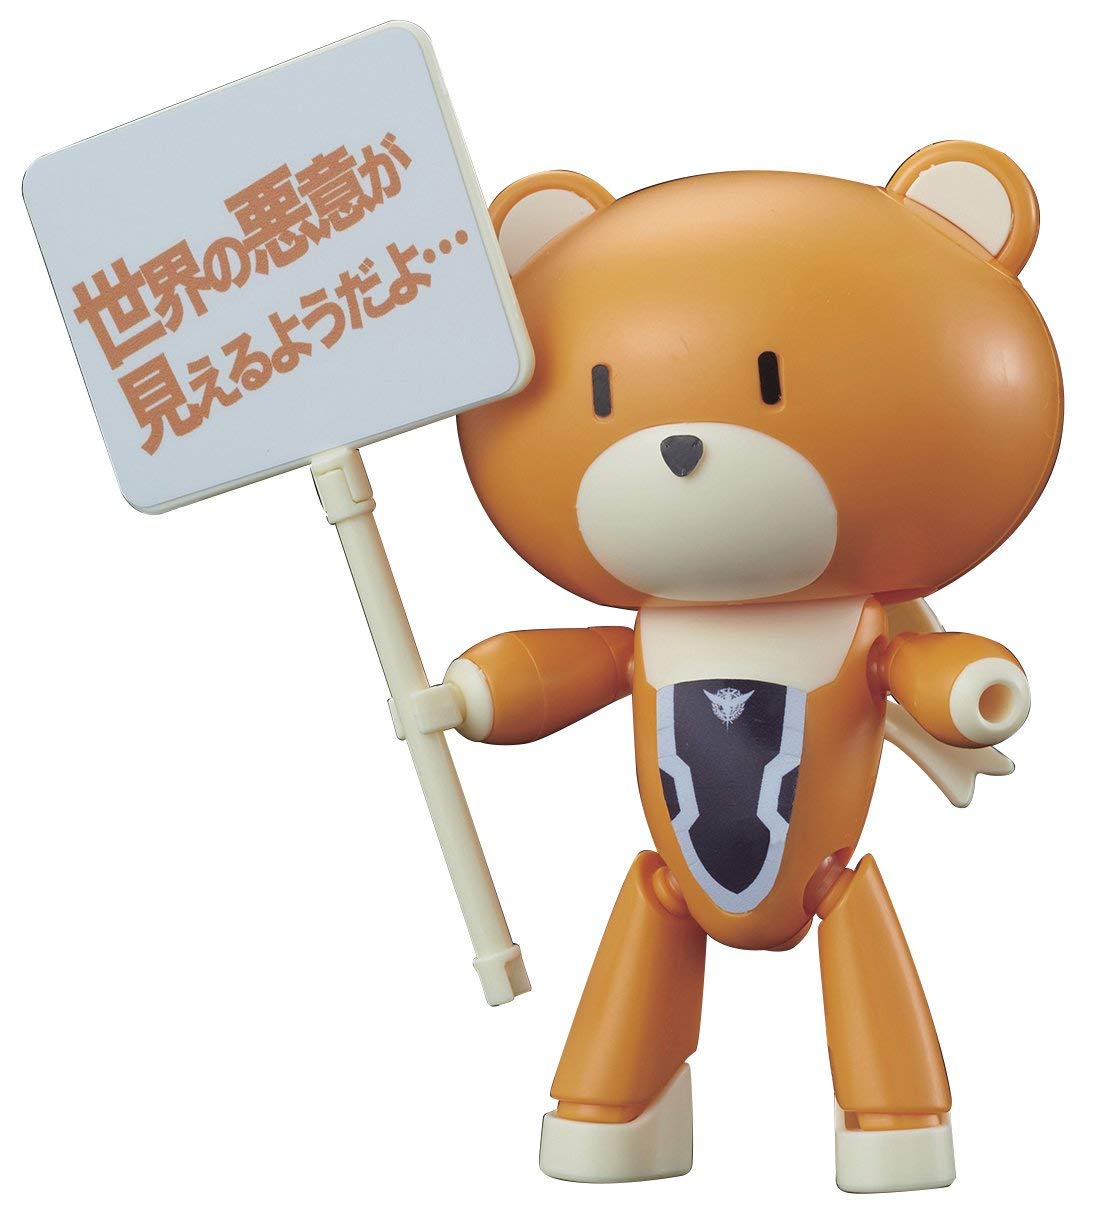 Gundam HGPG 00 Petit'Gguy Allelujah Haptism Orange & Placard Bear Guy Model Kit